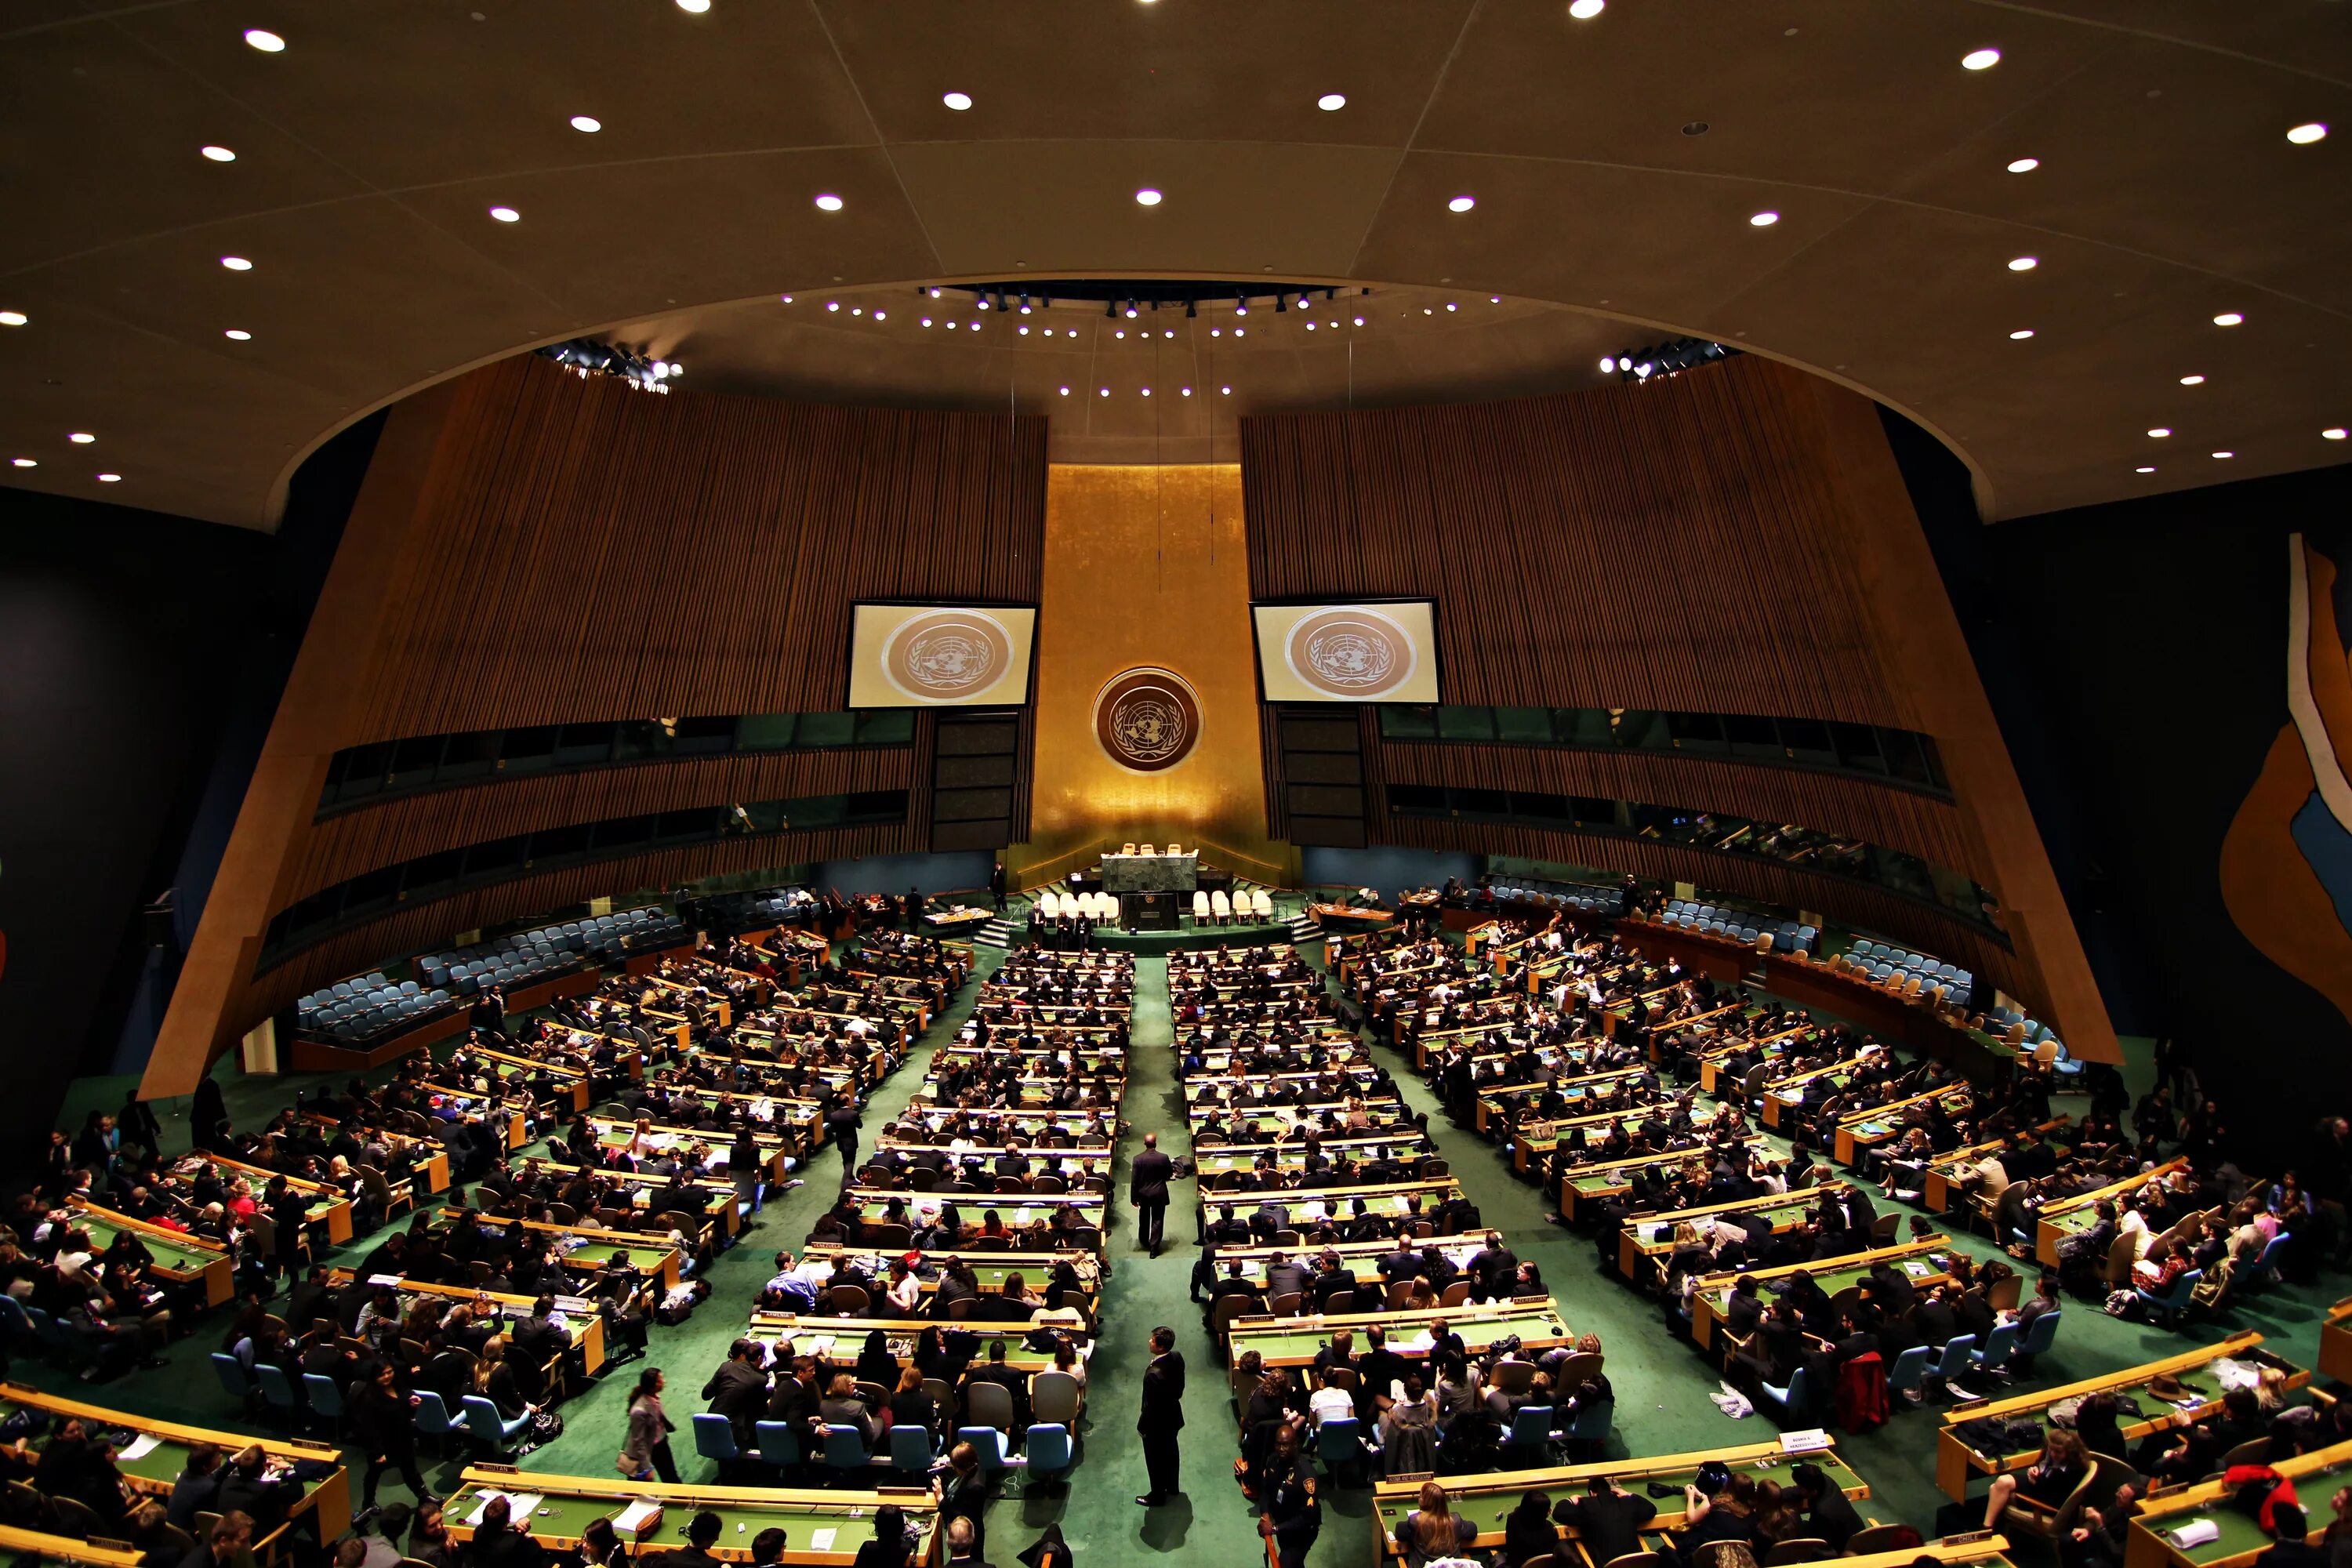 Генеральная Ассамблея ООН Нью-Йорк. Зал Генеральной Ассамблеи ООН. Заседание Генеральной Ассамблеи ООН. Зал заседания Генеральной Ассамблеи ООН.